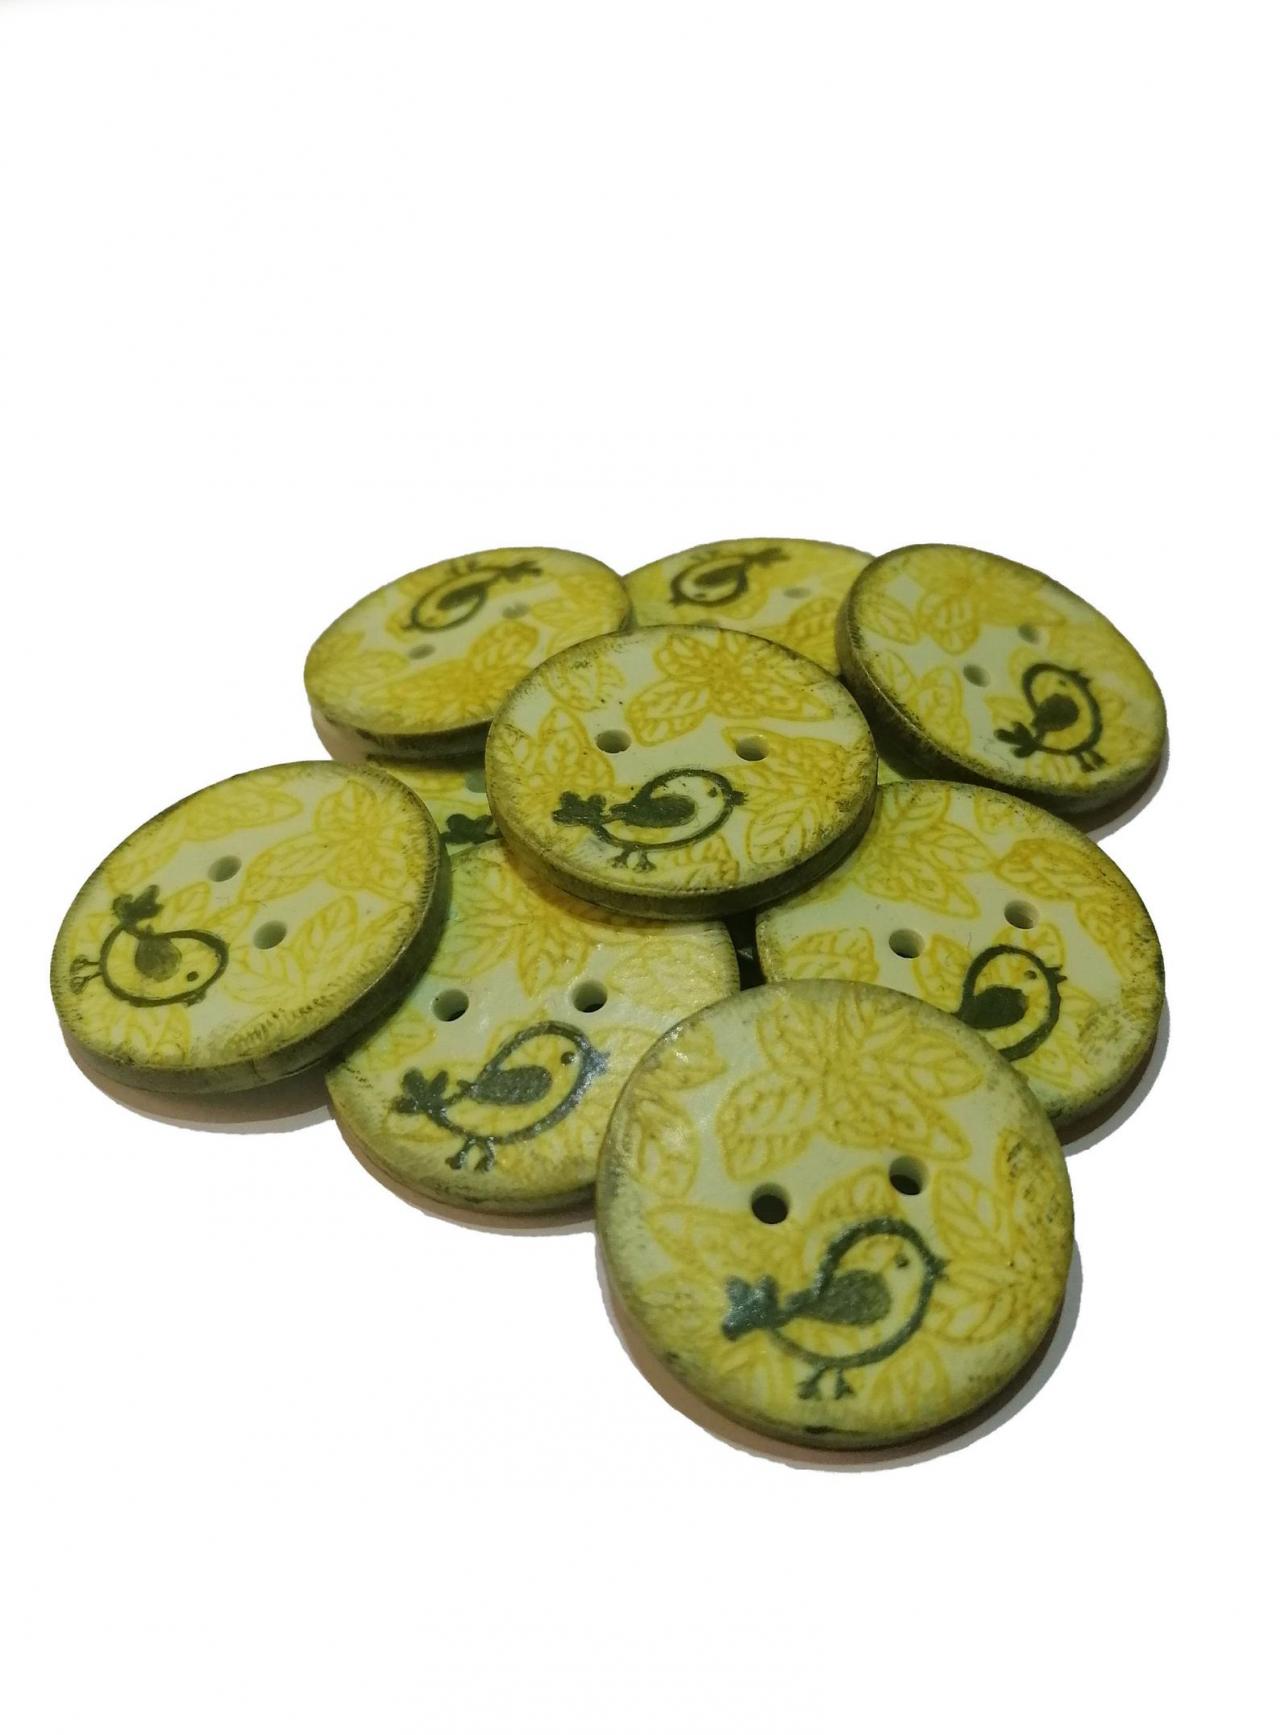 Poylmer Clay Button - Green Birds - 2cm (0,8 inch)